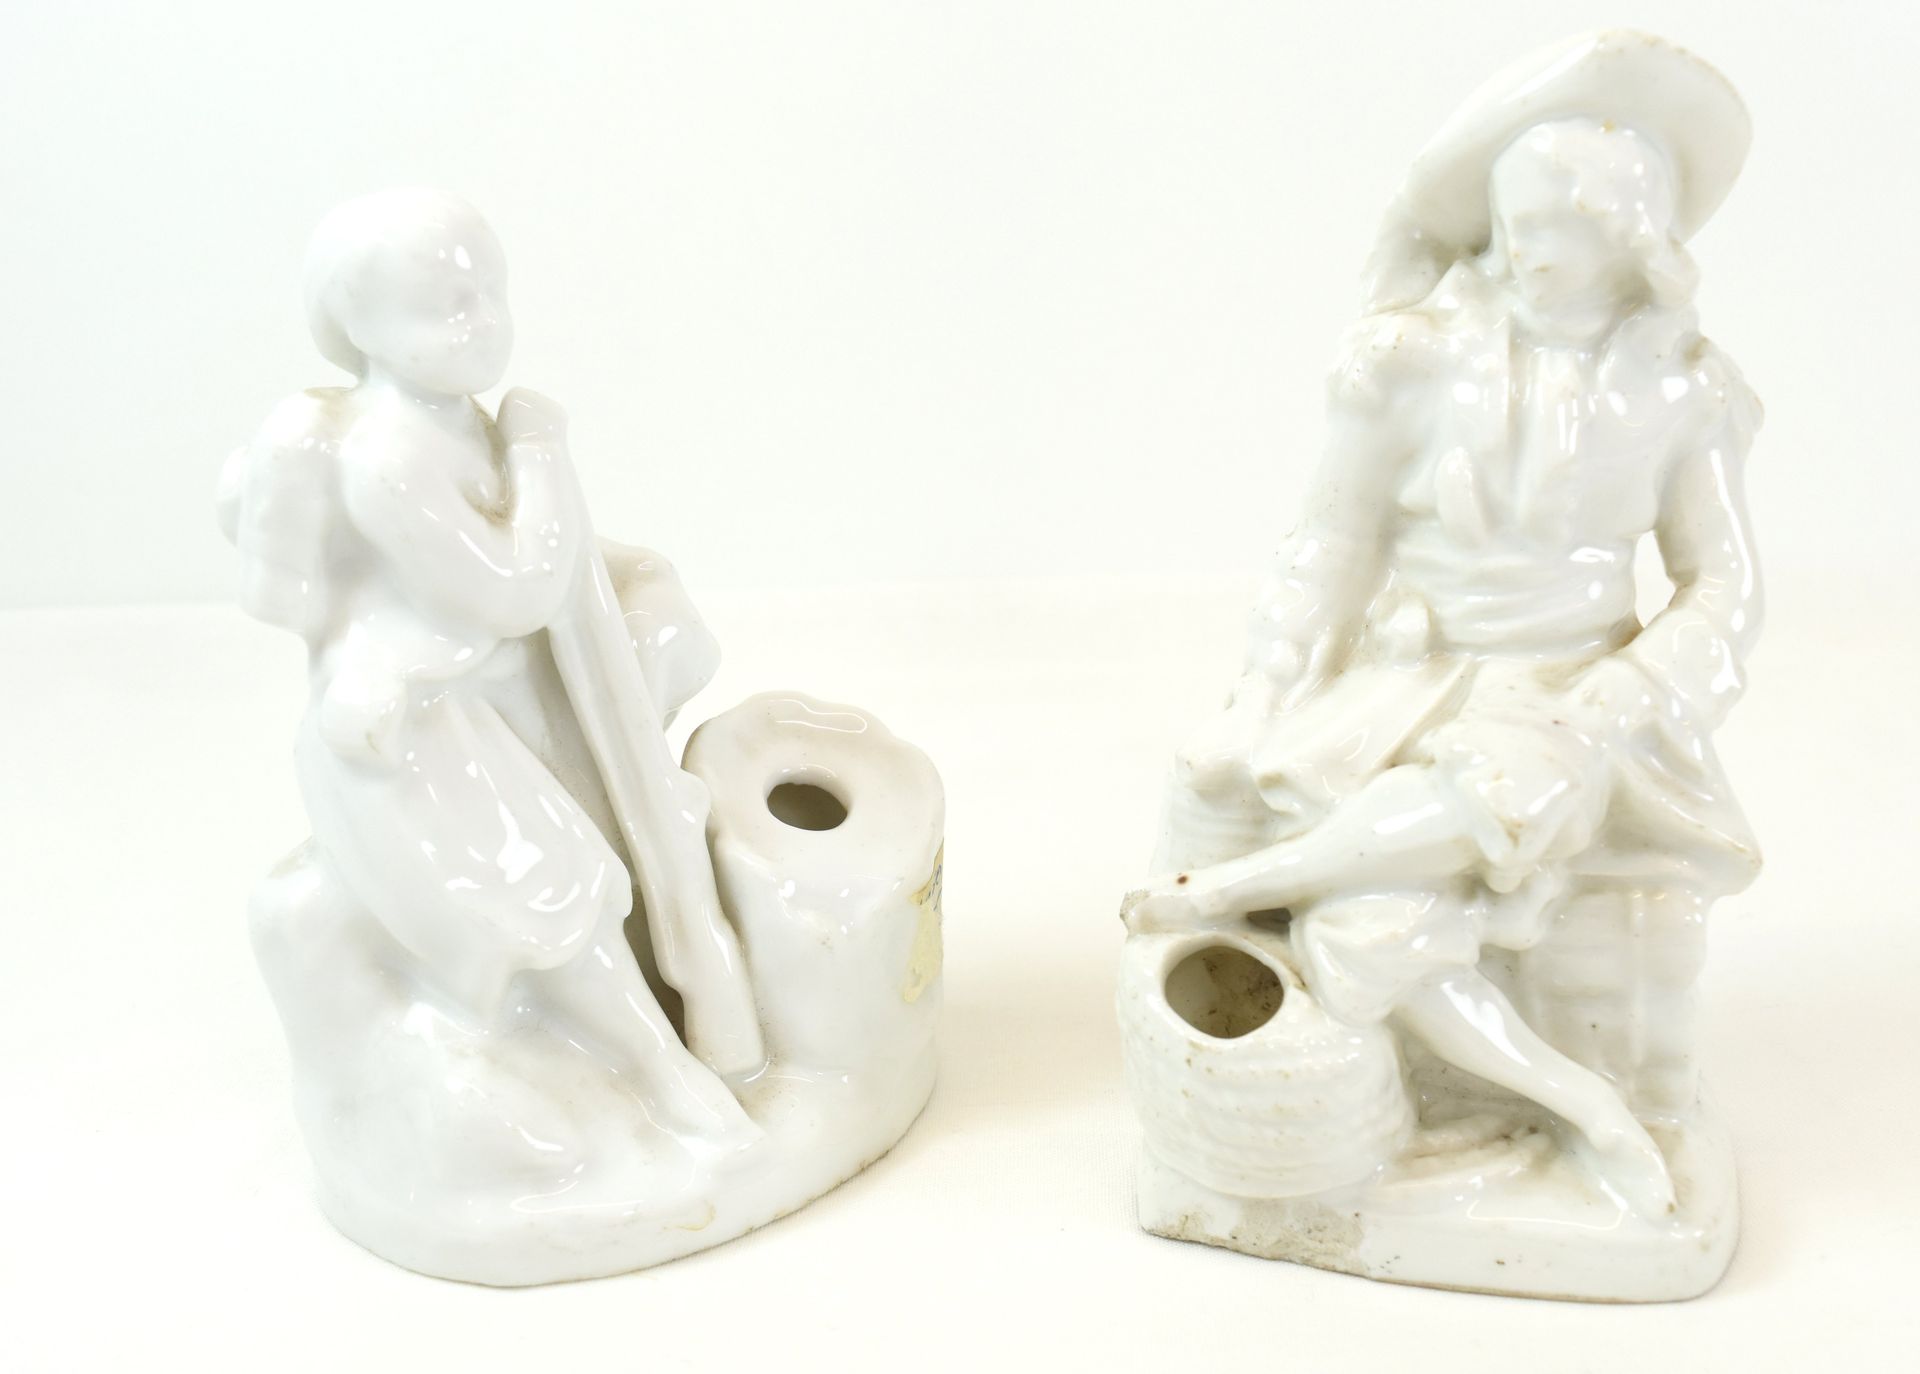 Null 2 tinteros de porcelana blanca (dañados) (14 x 7,5 cm y 13 x 9 cm) 

Descri&hellip;